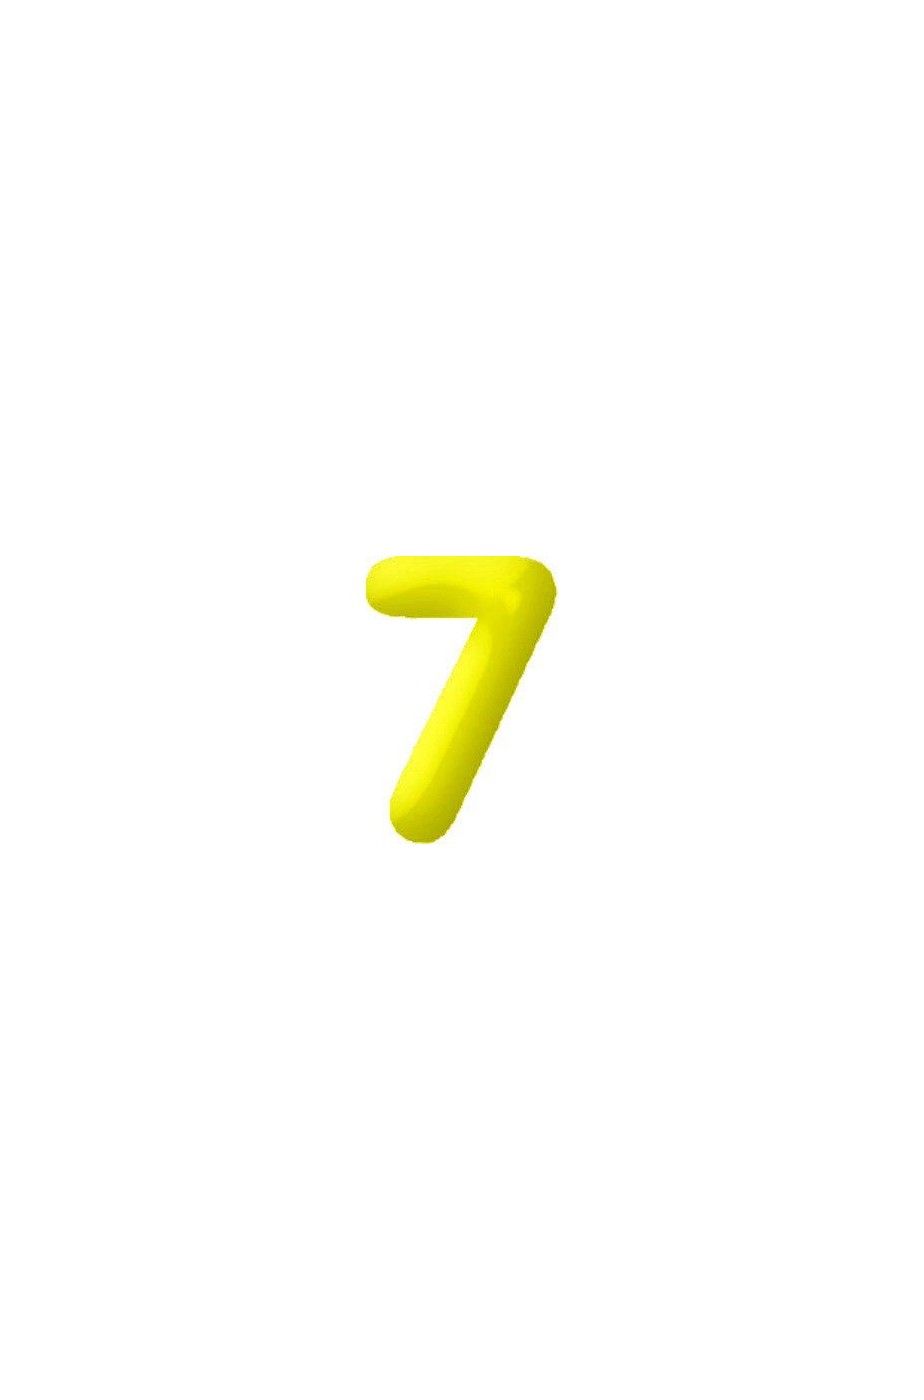 Numero gonfiabile n 6 per compleanno giallo